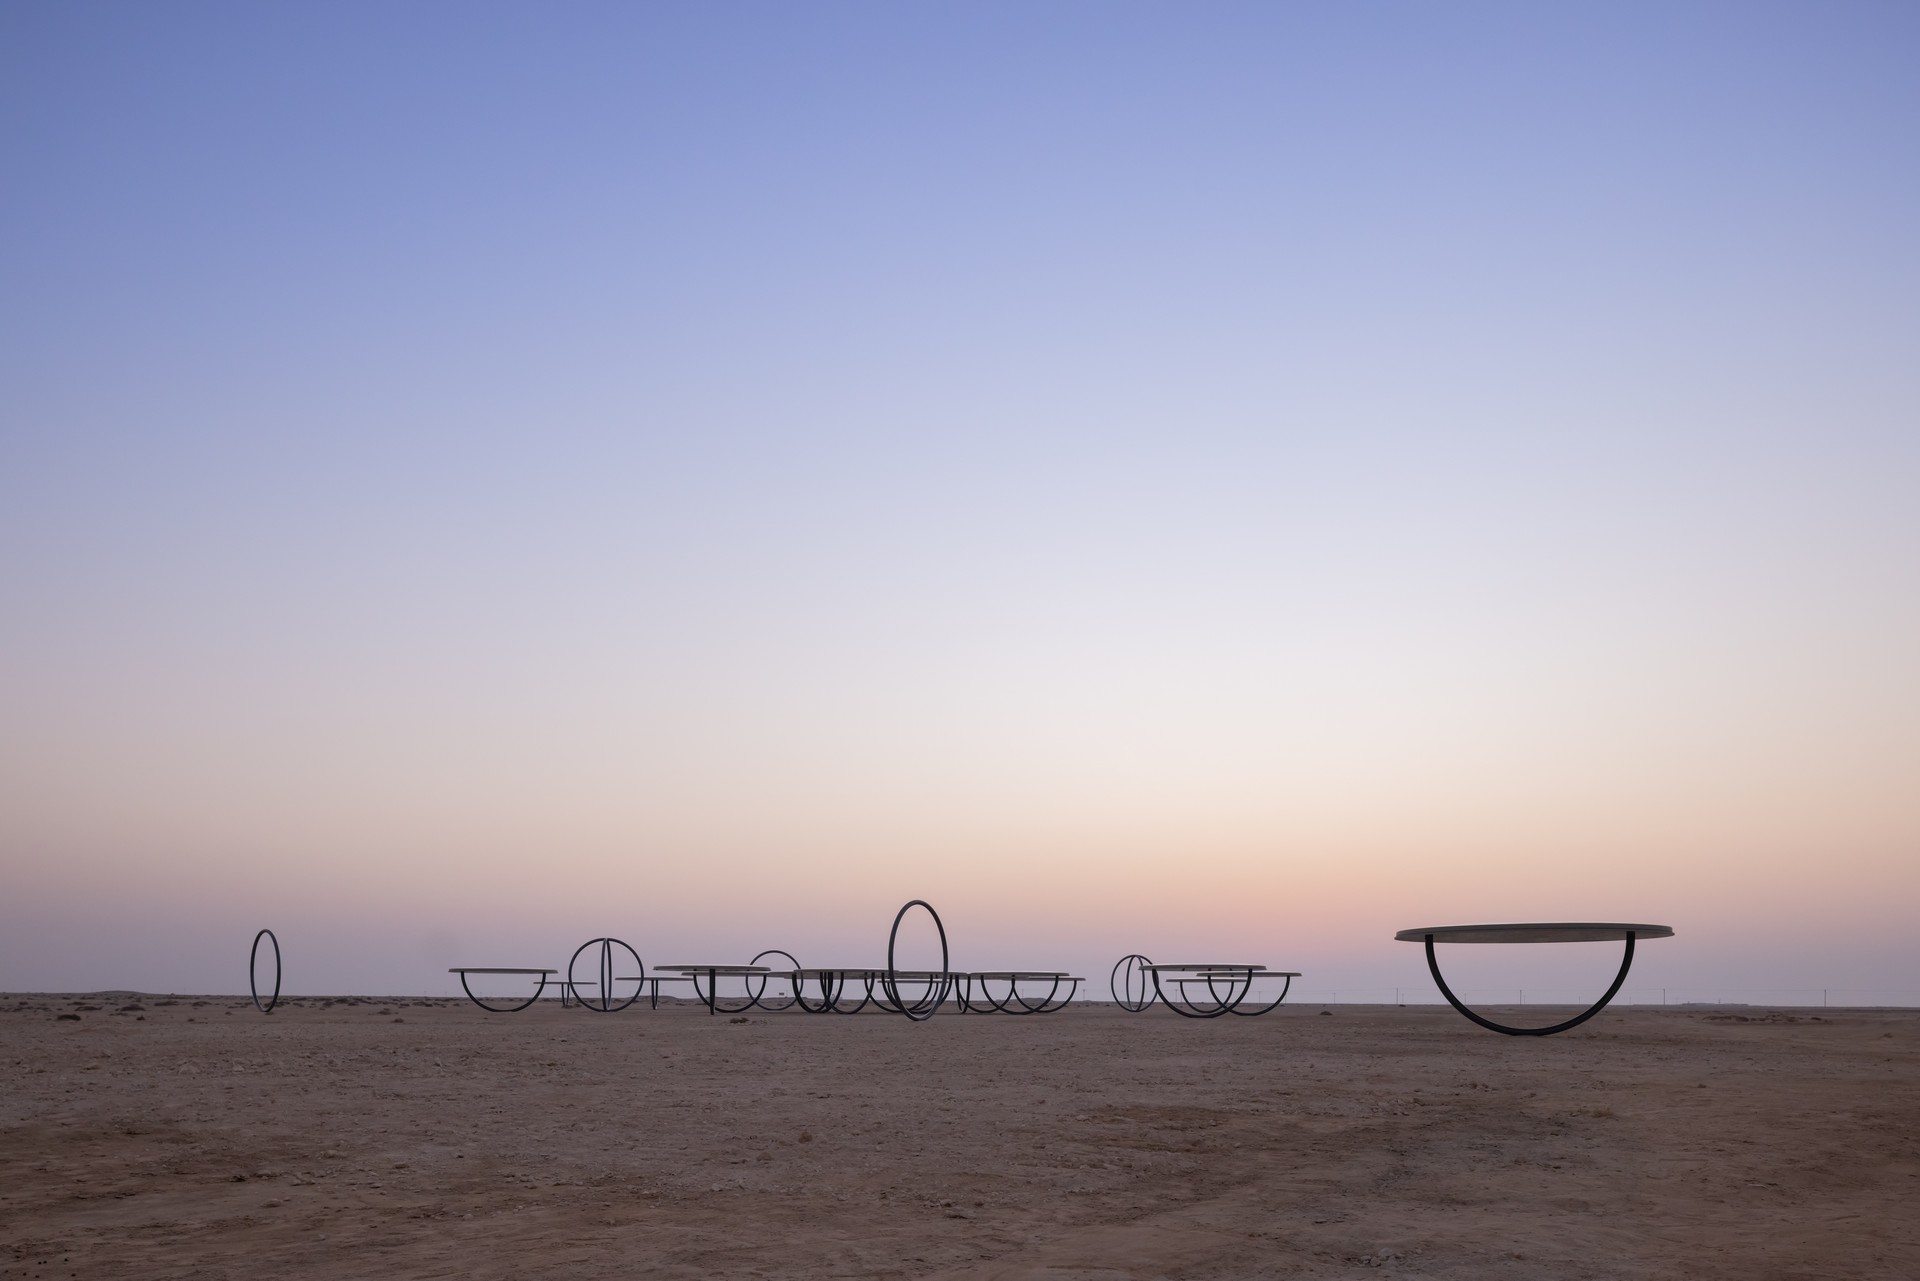 En plein désert, l'artiste Olafur Eliasson crée de gigantesques mirages